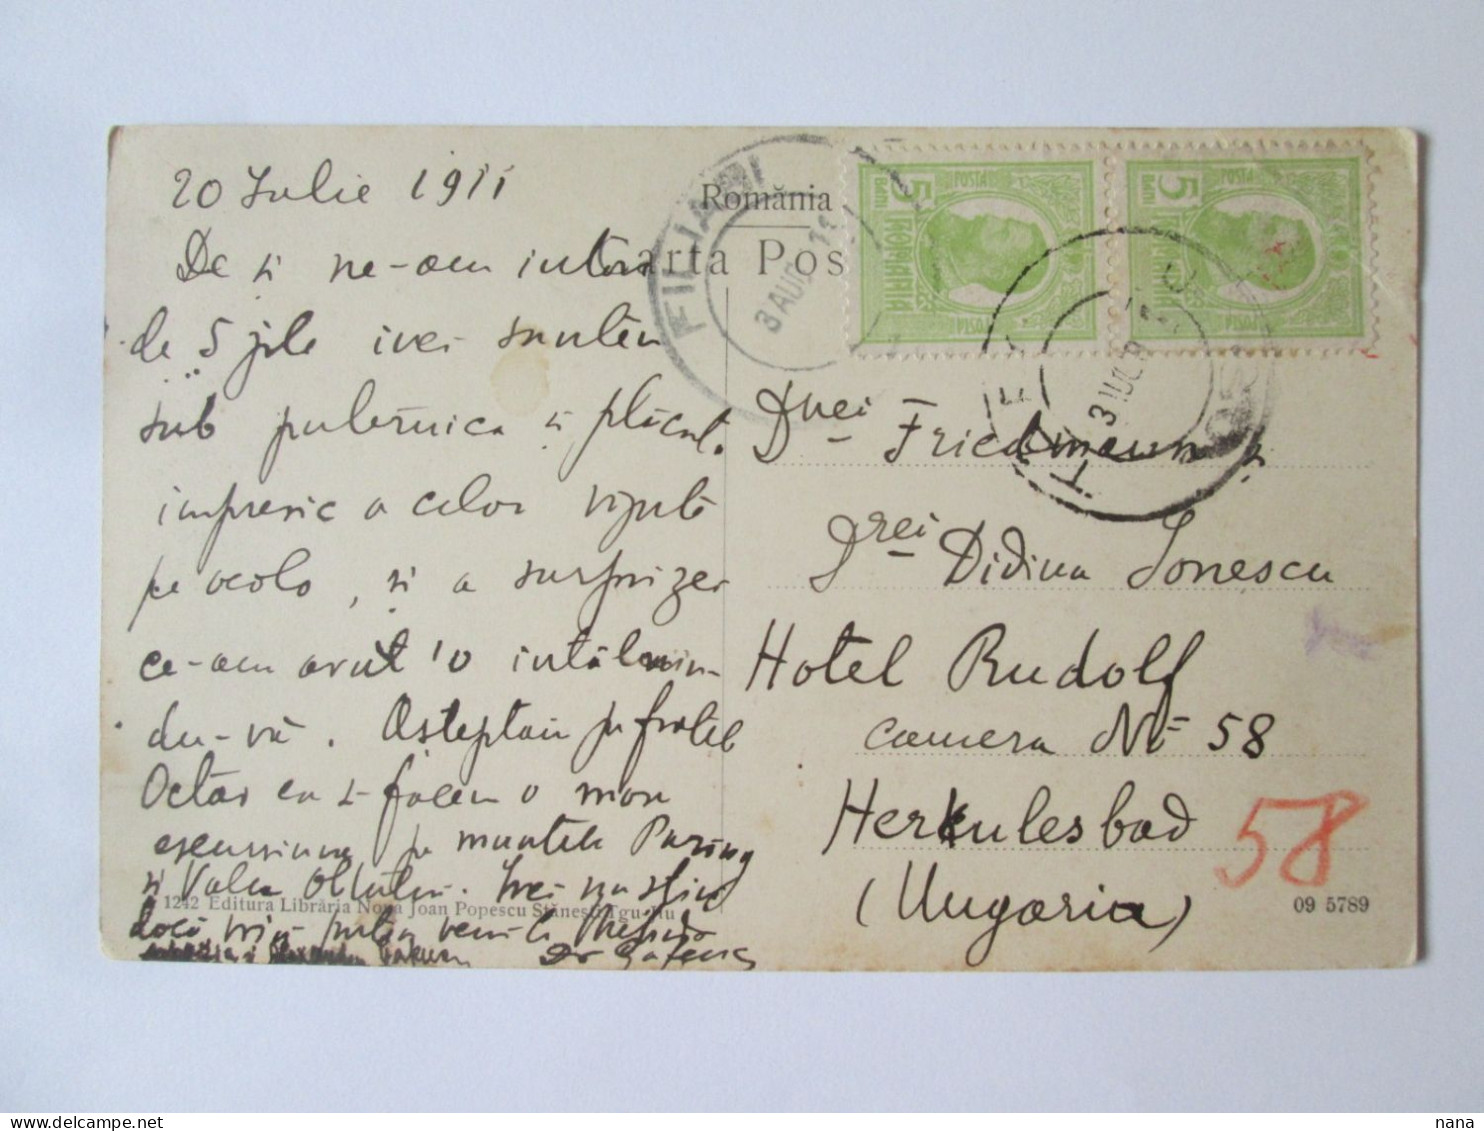 Romania-Salutations De/Greetings From Gorj:Valle De Jiului,c.postale Voyage 1911/Jiului Valley 1911 Mailed Postcard - Rumänien